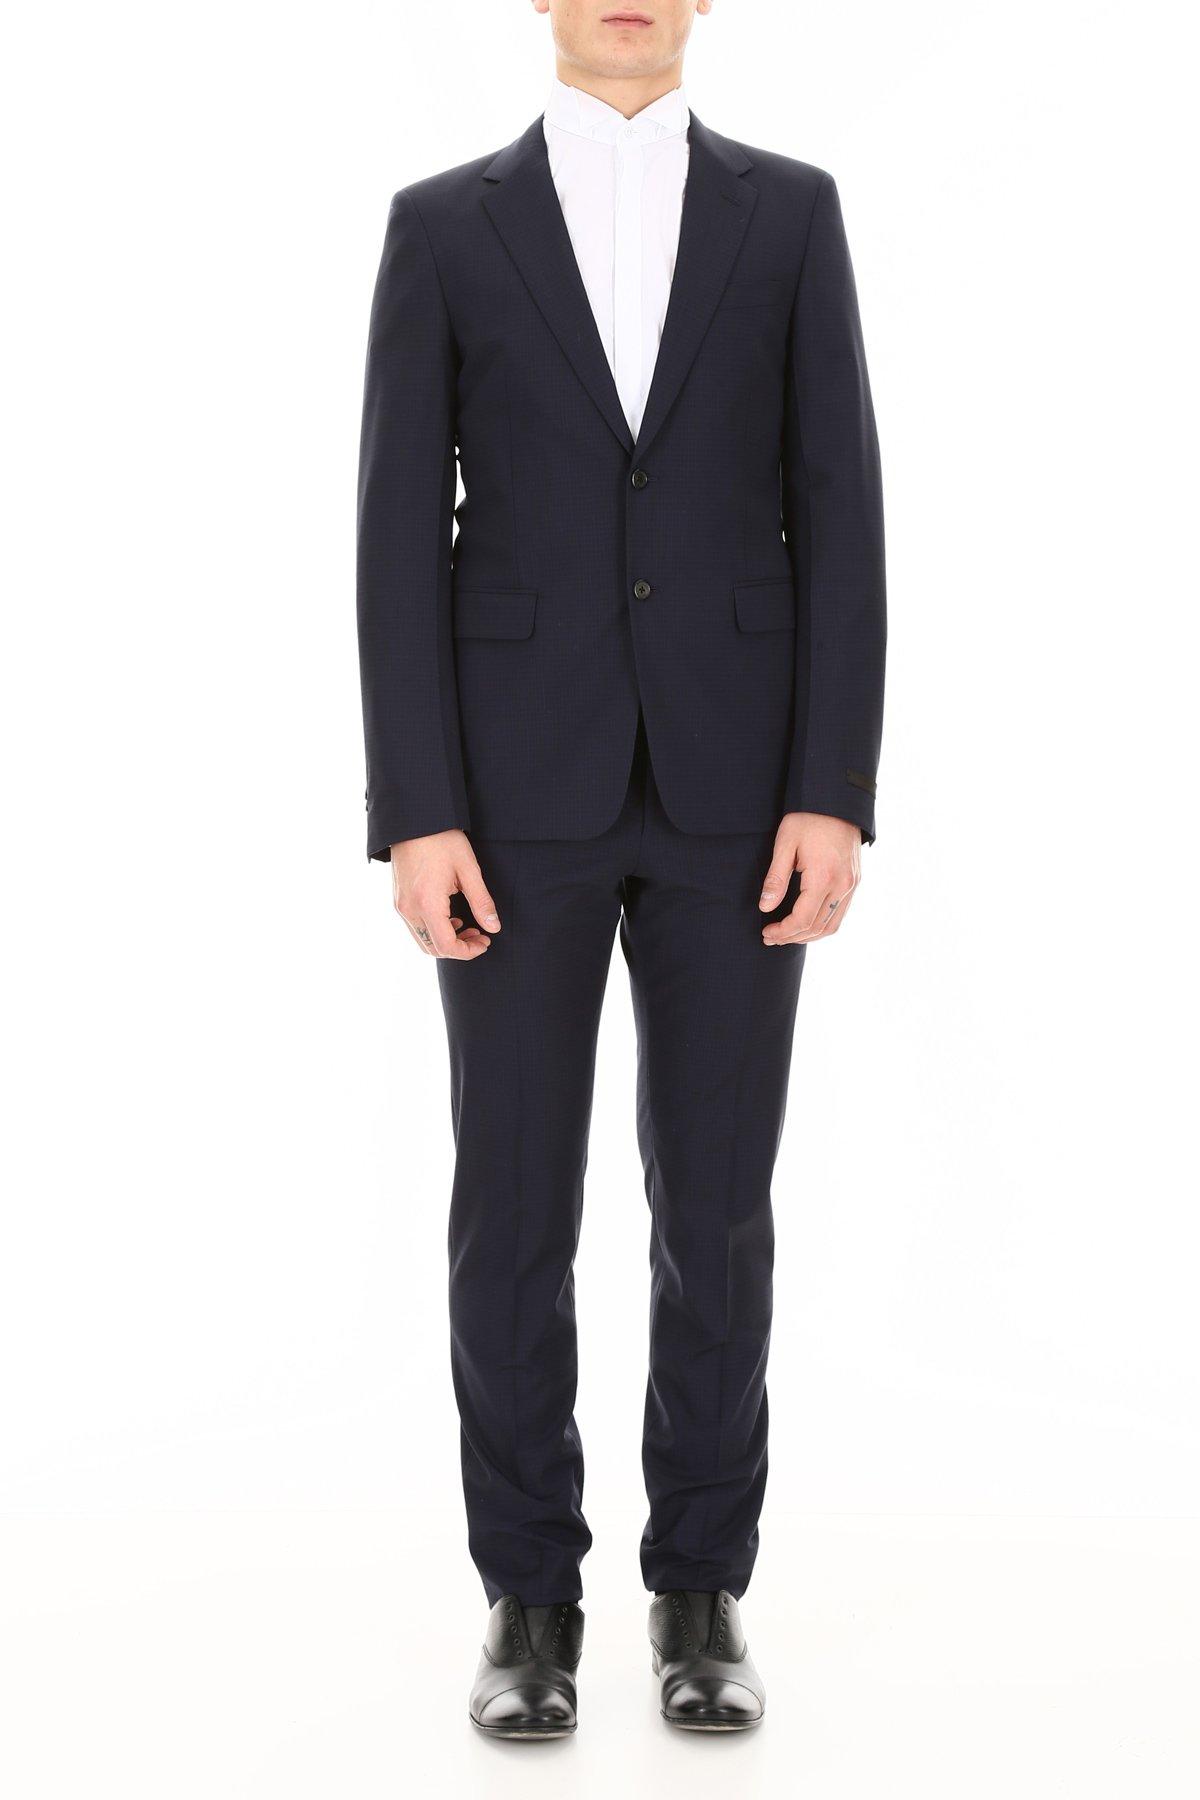 Prada Techno Classic Suit in Blue for Men - Lyst